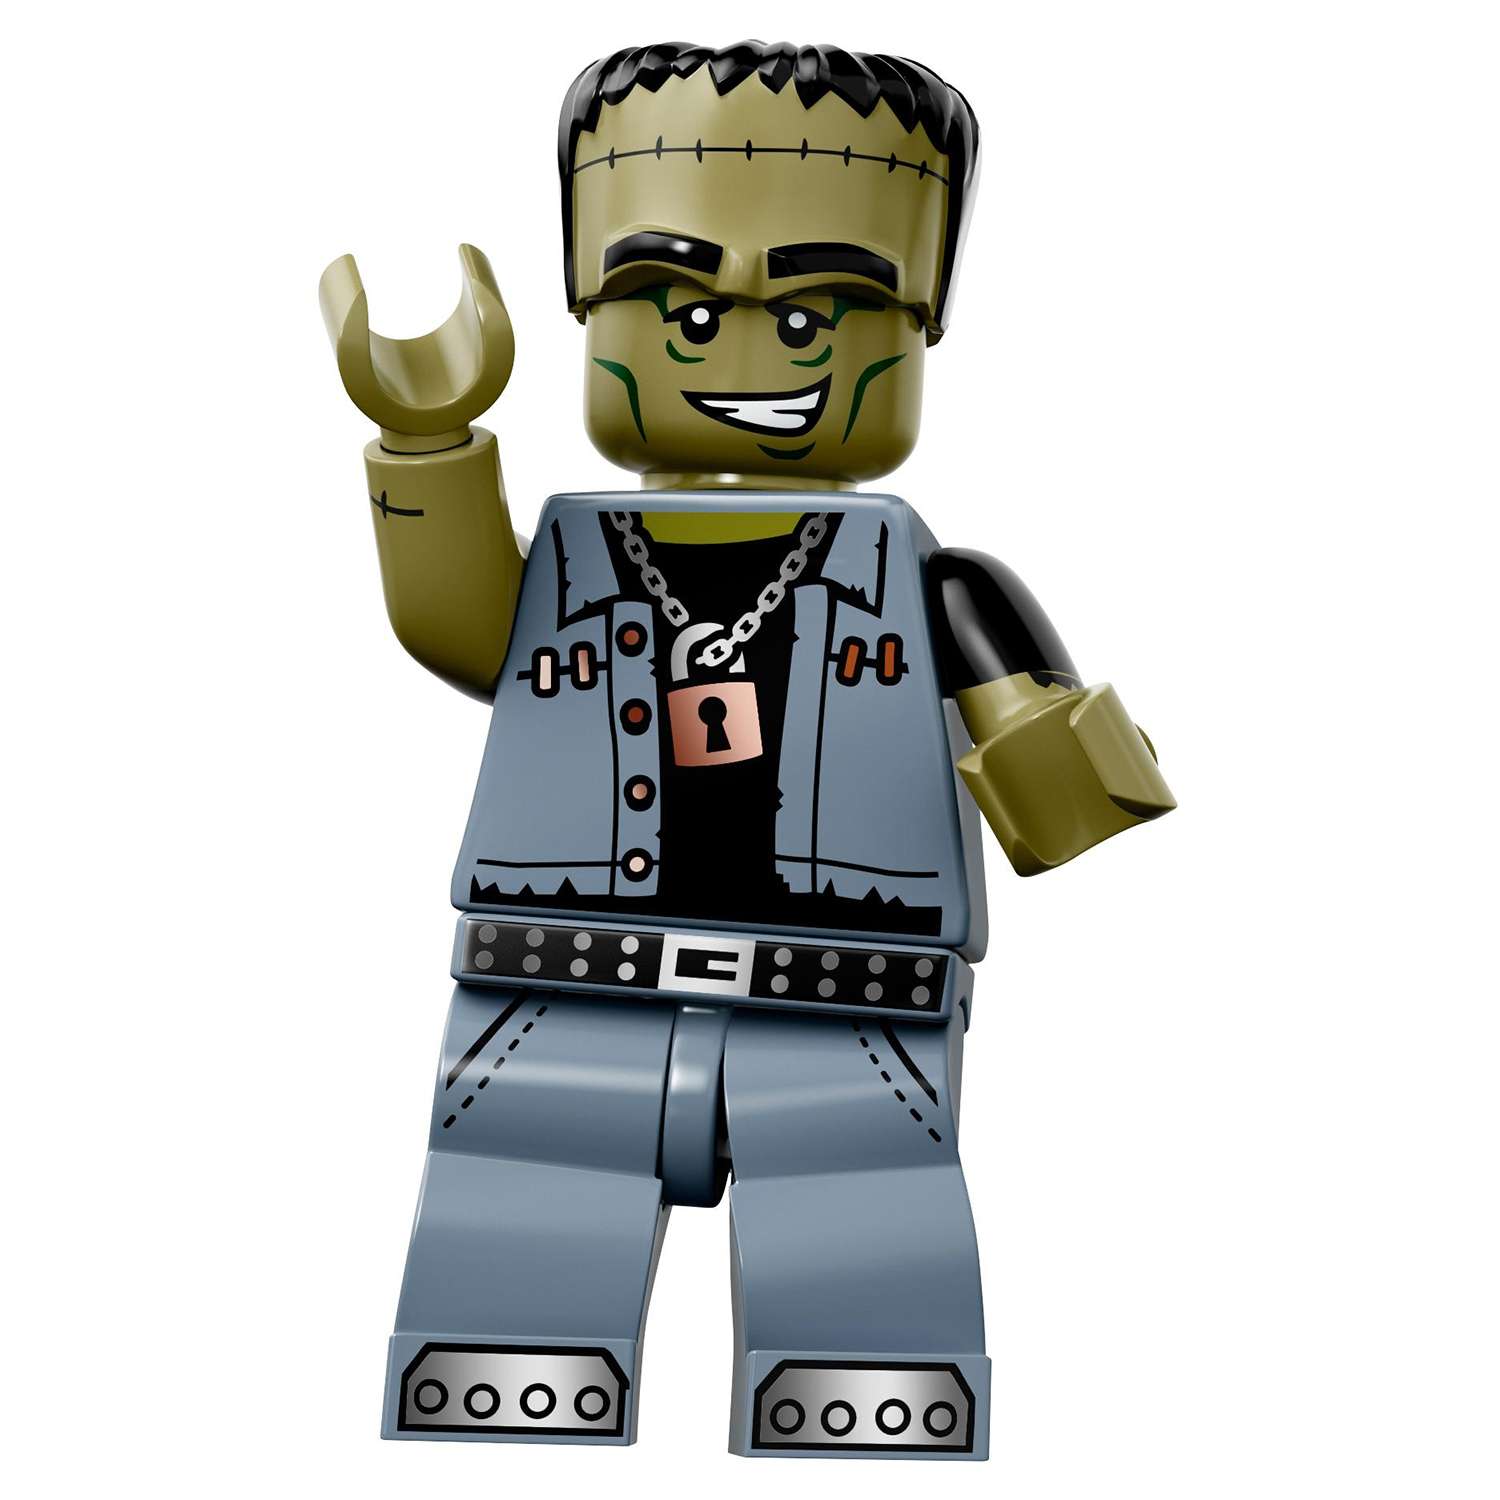 Конструктор LEGO Minifigures серия 14: Монстры (71010) в непрозрачной упаковке (Сюрприз) - фото 28